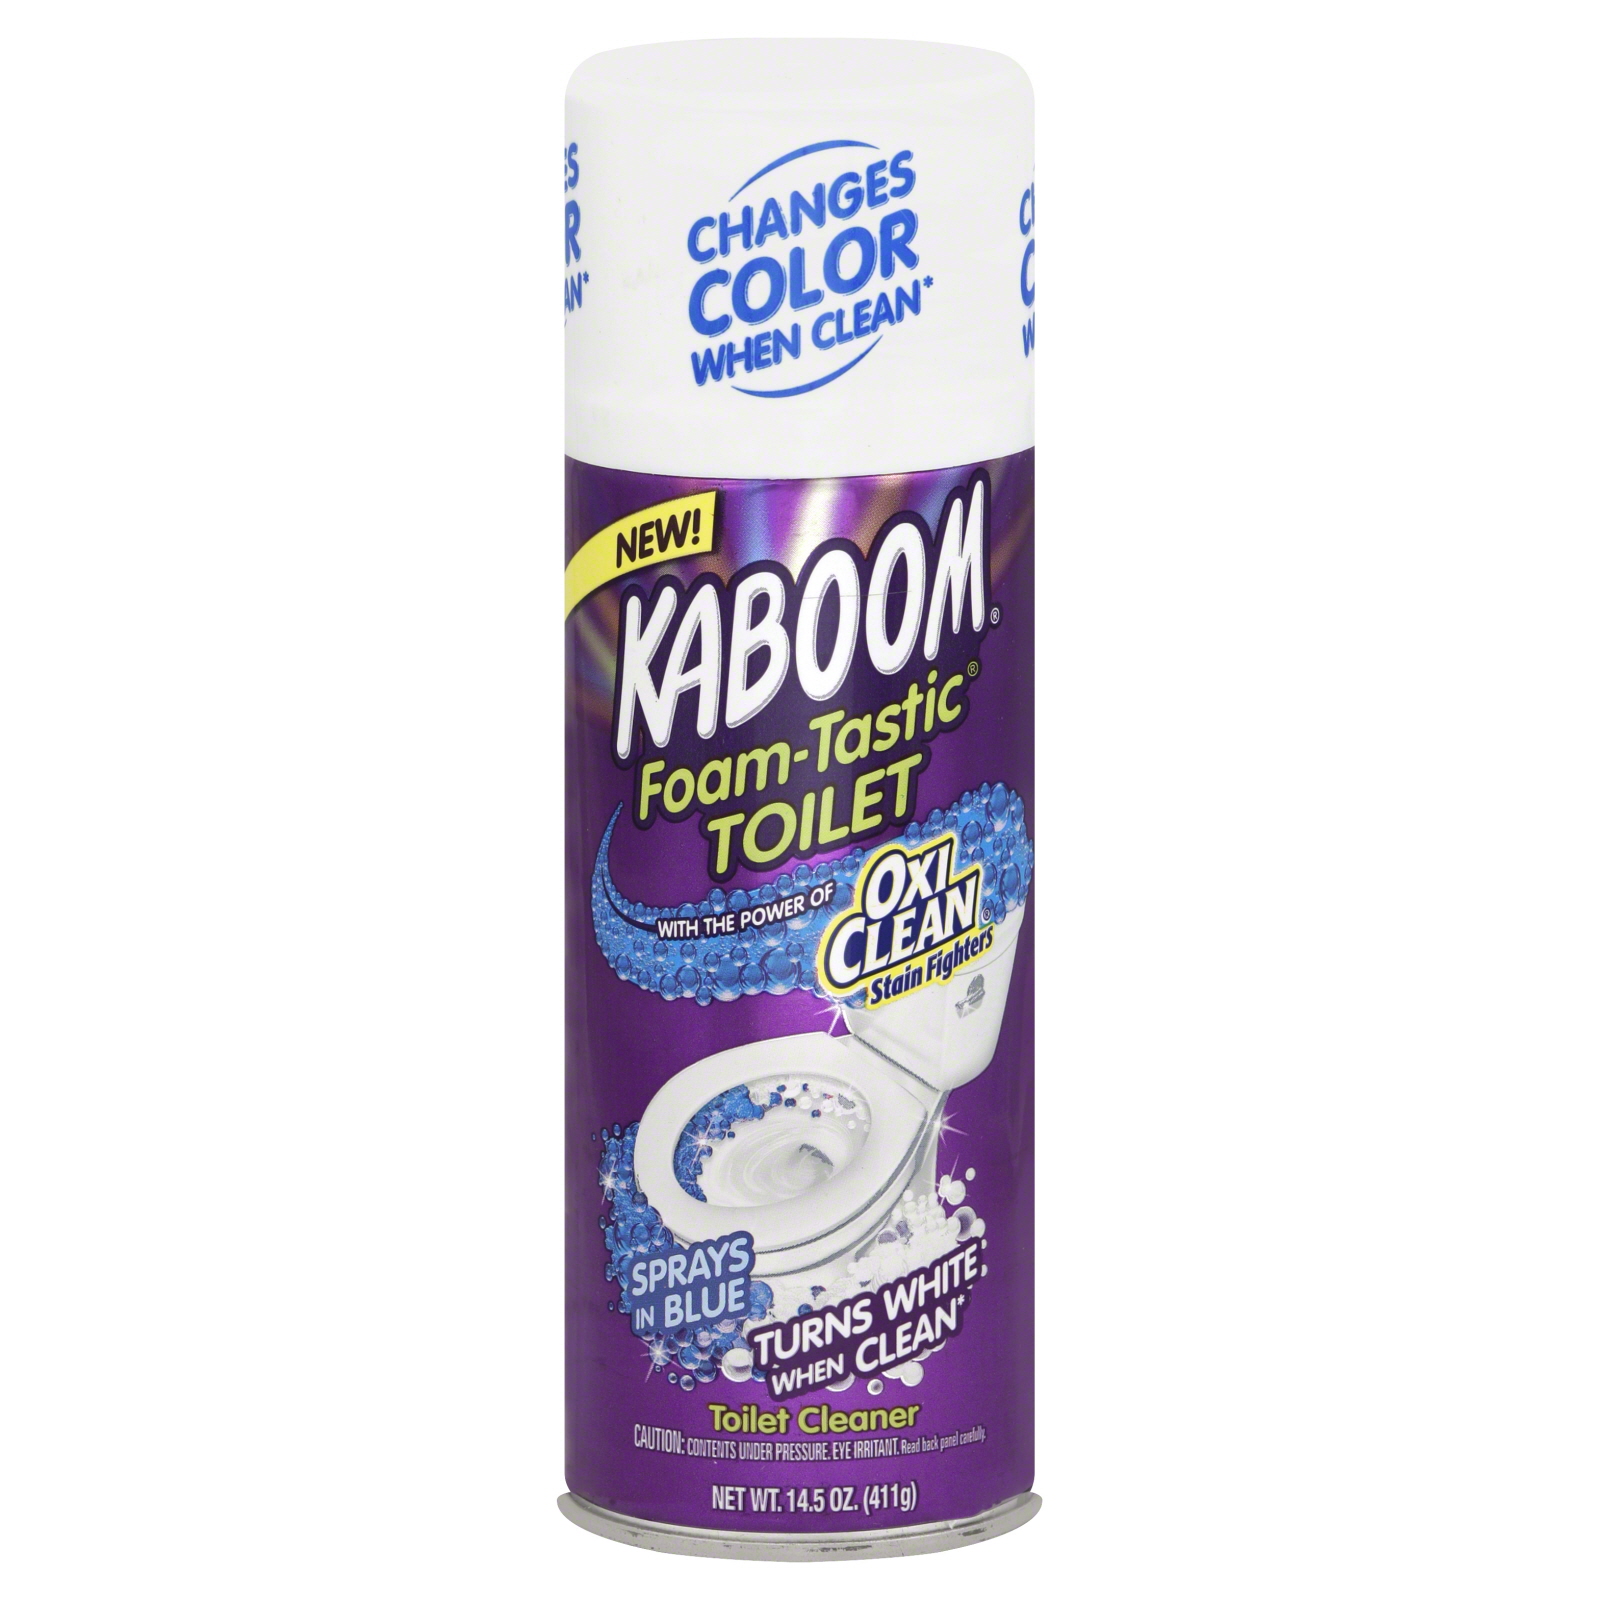 Kaboom Toilet Cleaner, Foam-Tastic 14.5 oz (411 g)